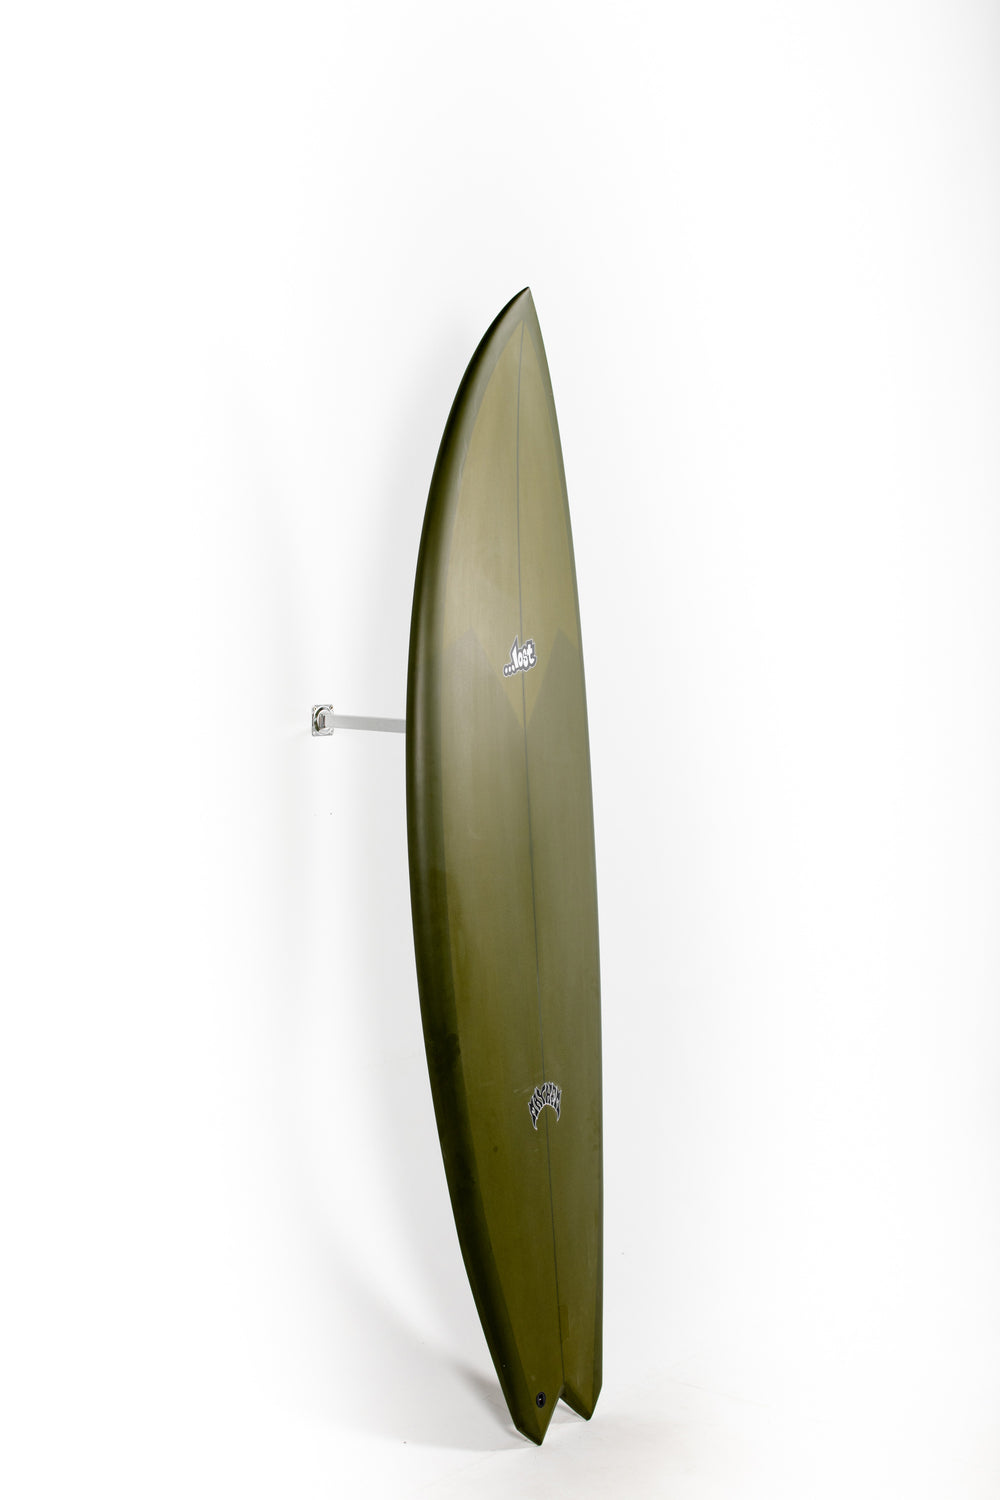 Lost Surfboards - GLYDRA by Matt Biolos - 6'8 at PUKAS SURF SHOP